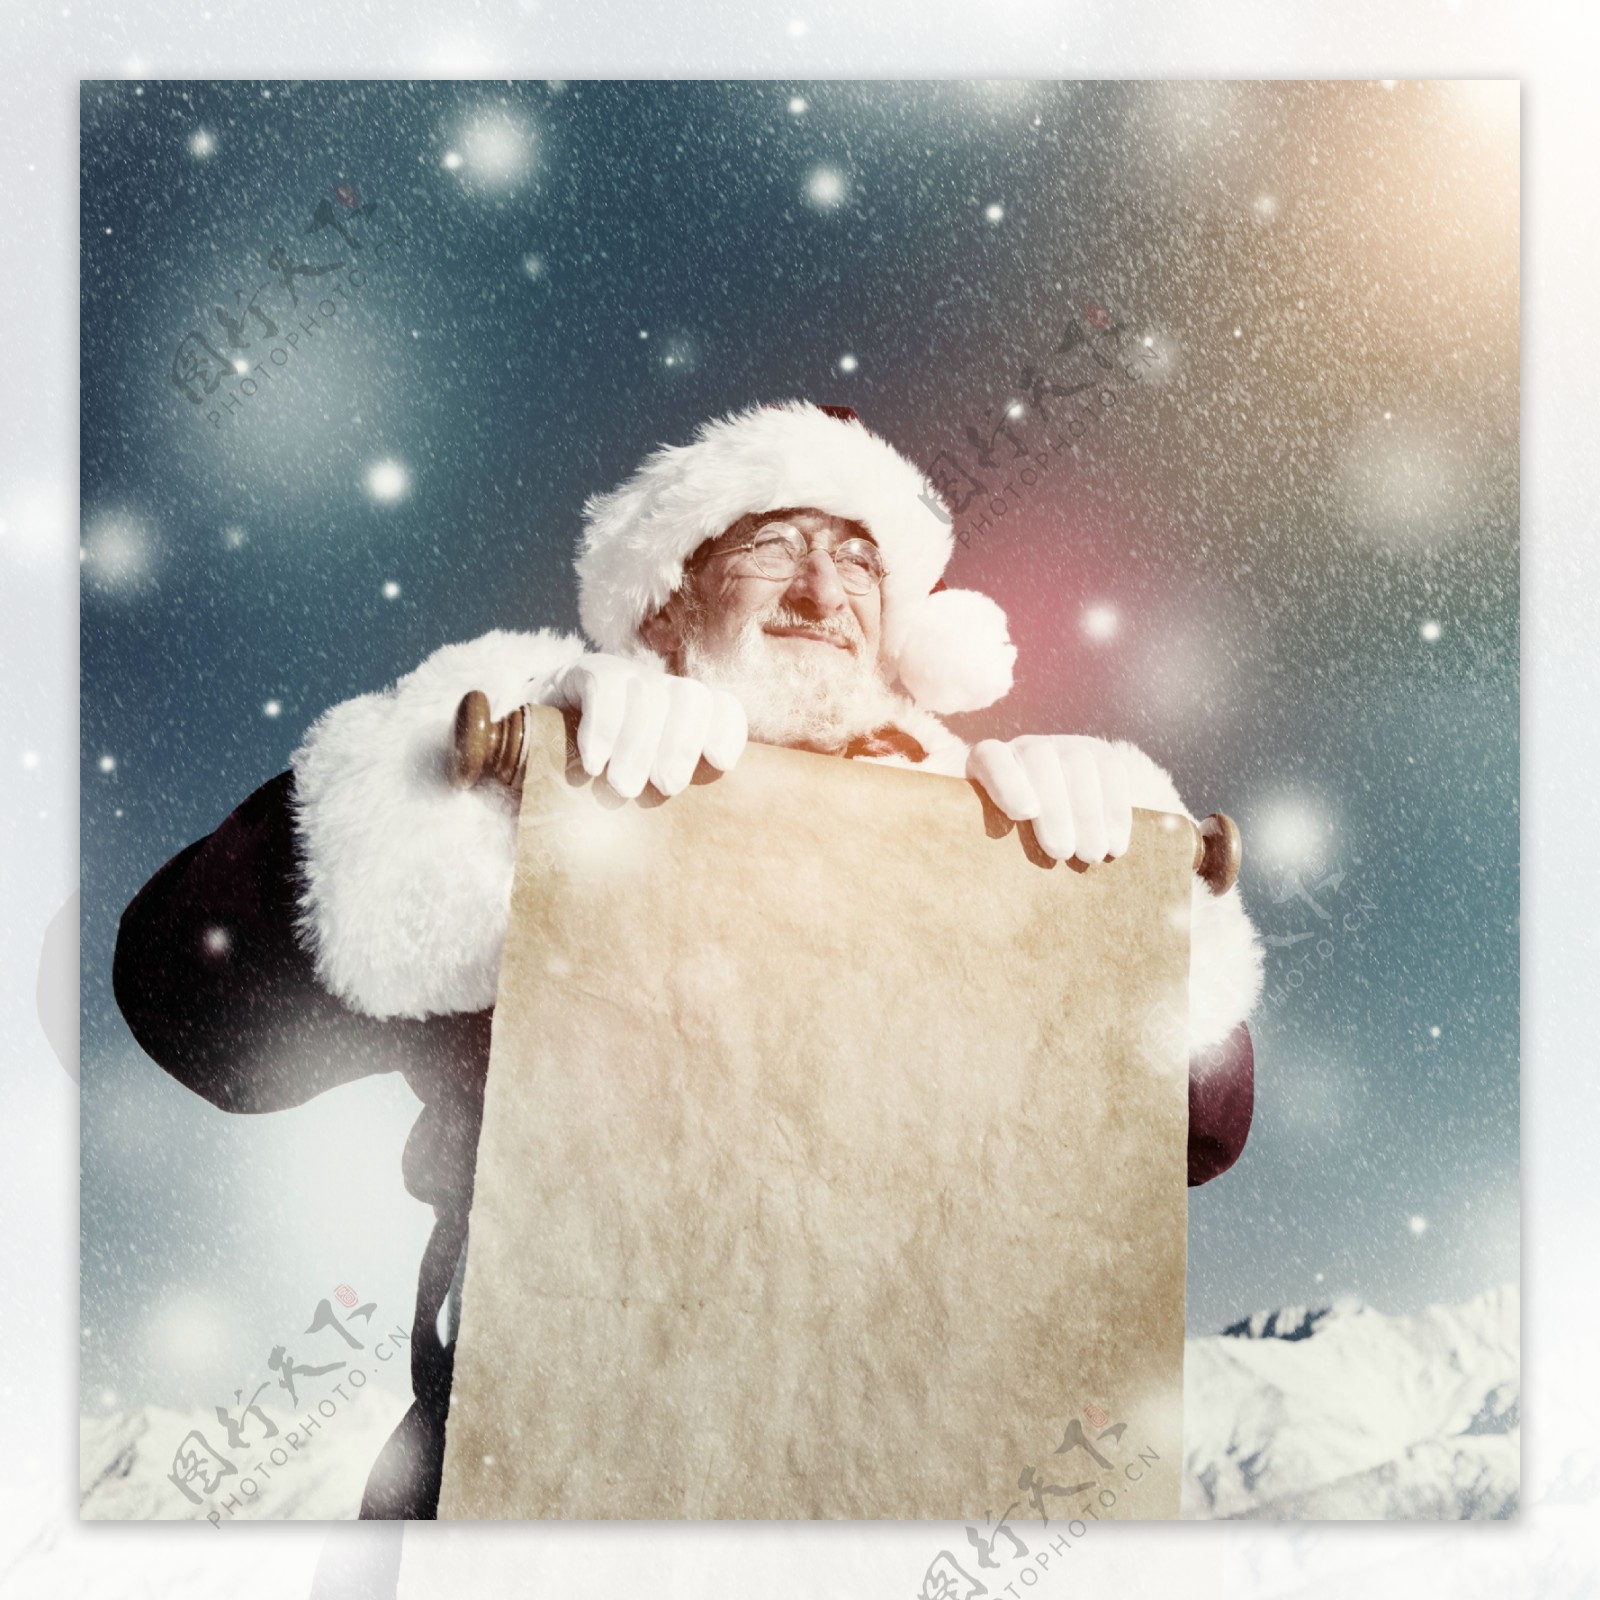 展示卡片的圣诞老人图片